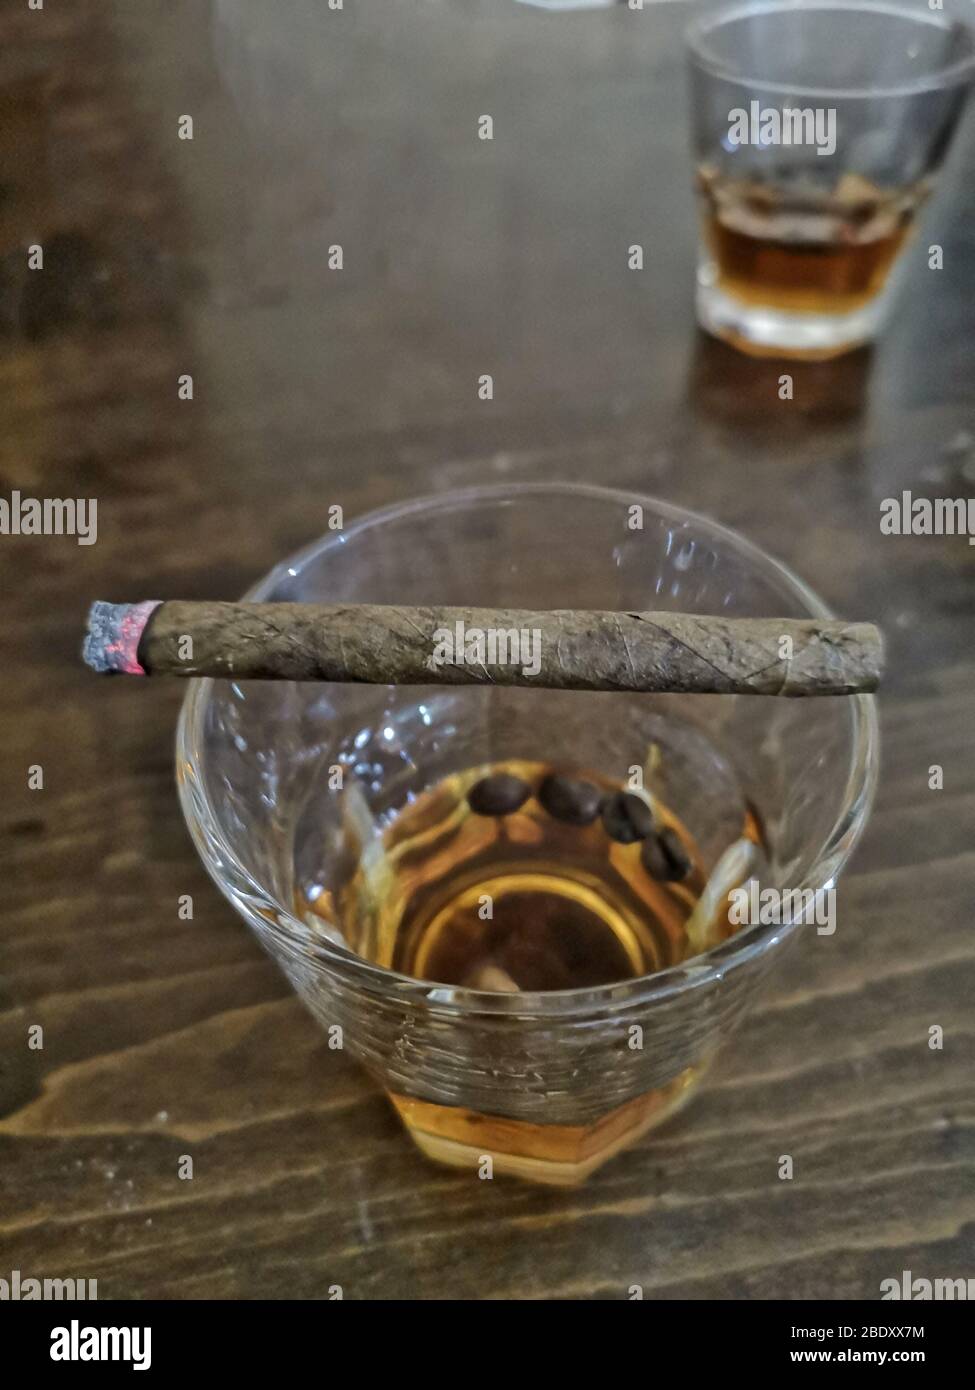 Primo piano di mezzo bicchiere pieno di whisky in cima al bar di legno con sigaro acceso sopra di esso, perché fumare e alcolismo è male, condividendo scotch whisky Foto Stock